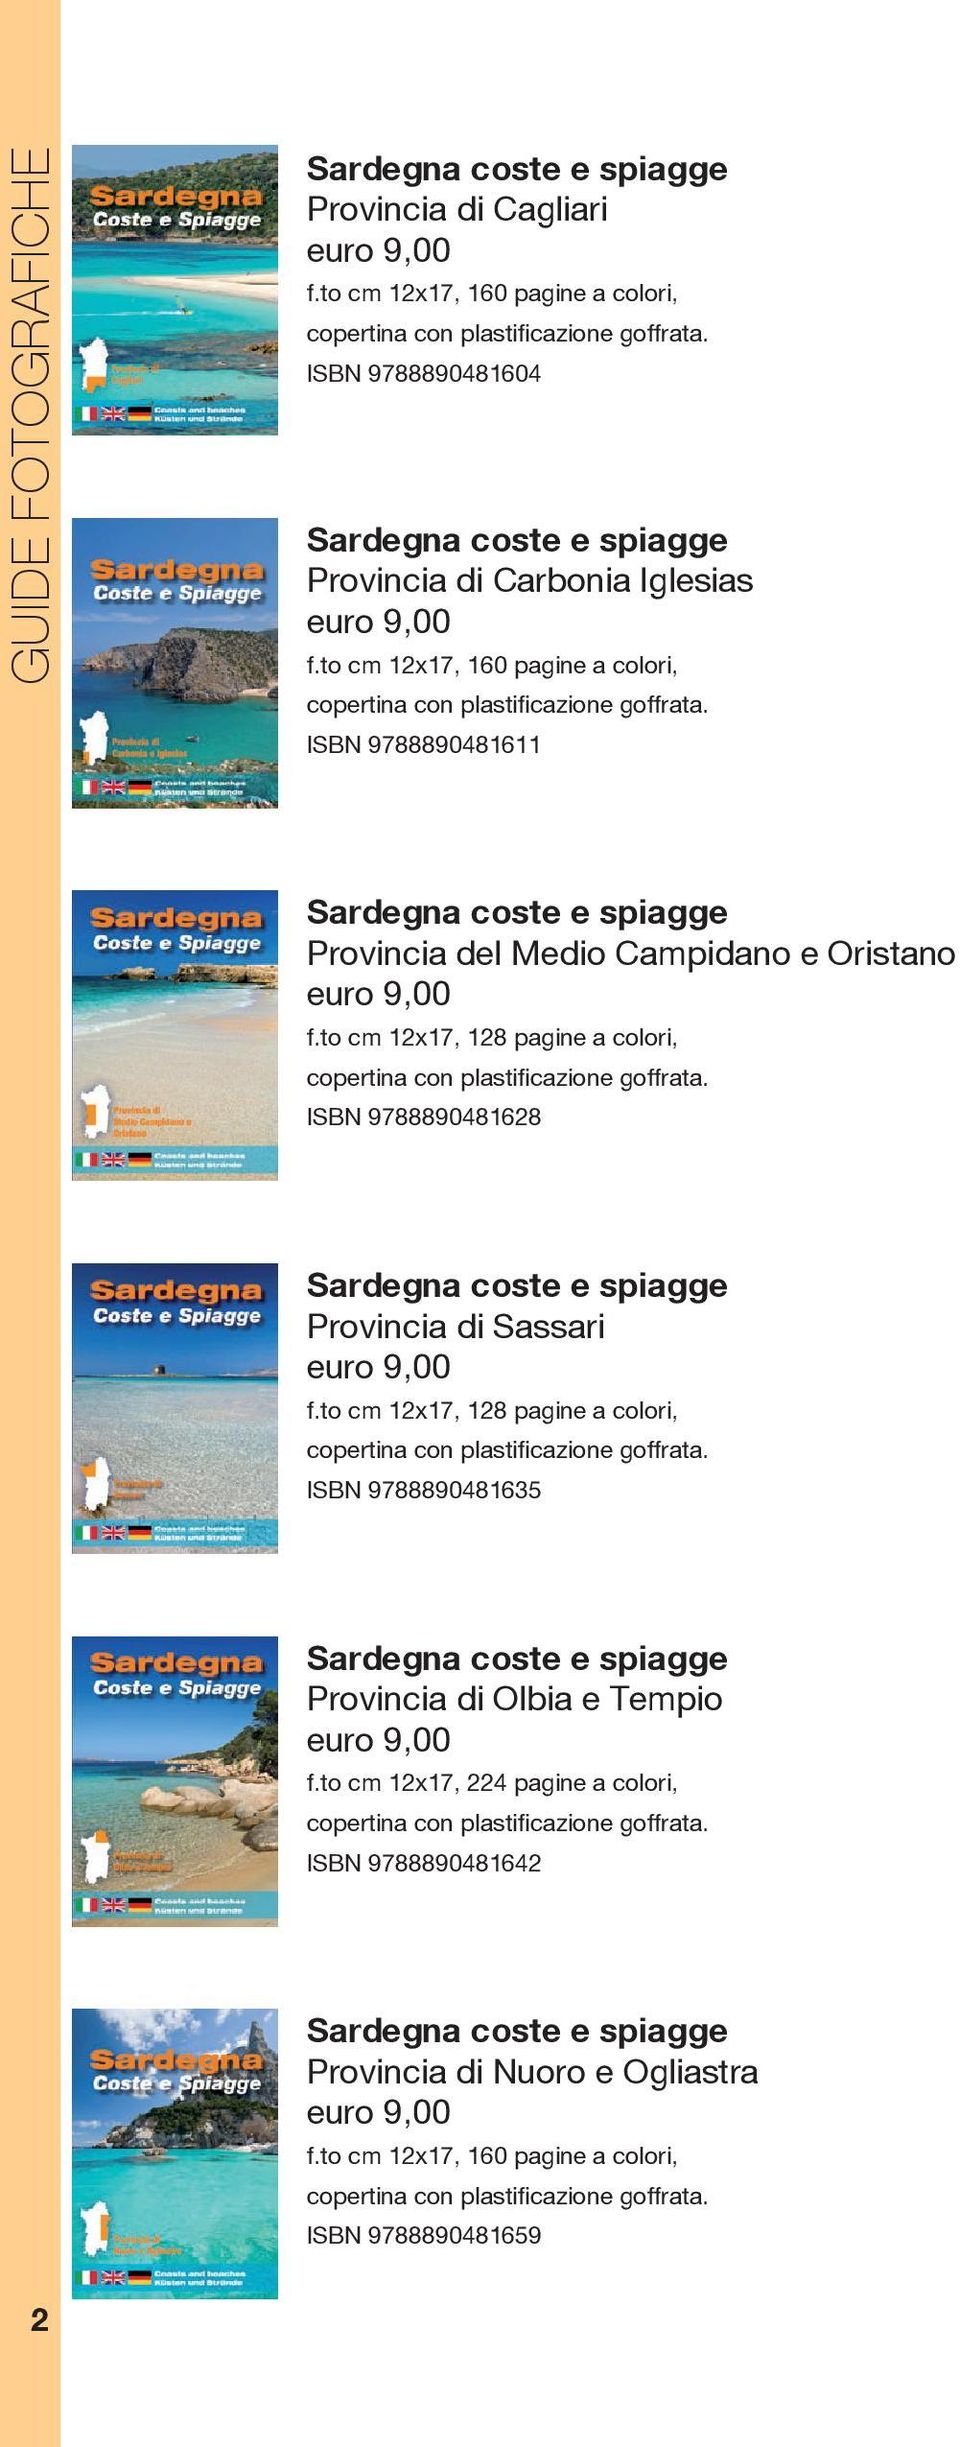 ISBN 9788890481611 coste e spiagge Provincia del Medio Campidano e Oristano euro 9,00 f.to cm 12x17, 128 pagine a colori, copertina con plastificazione goffrata.